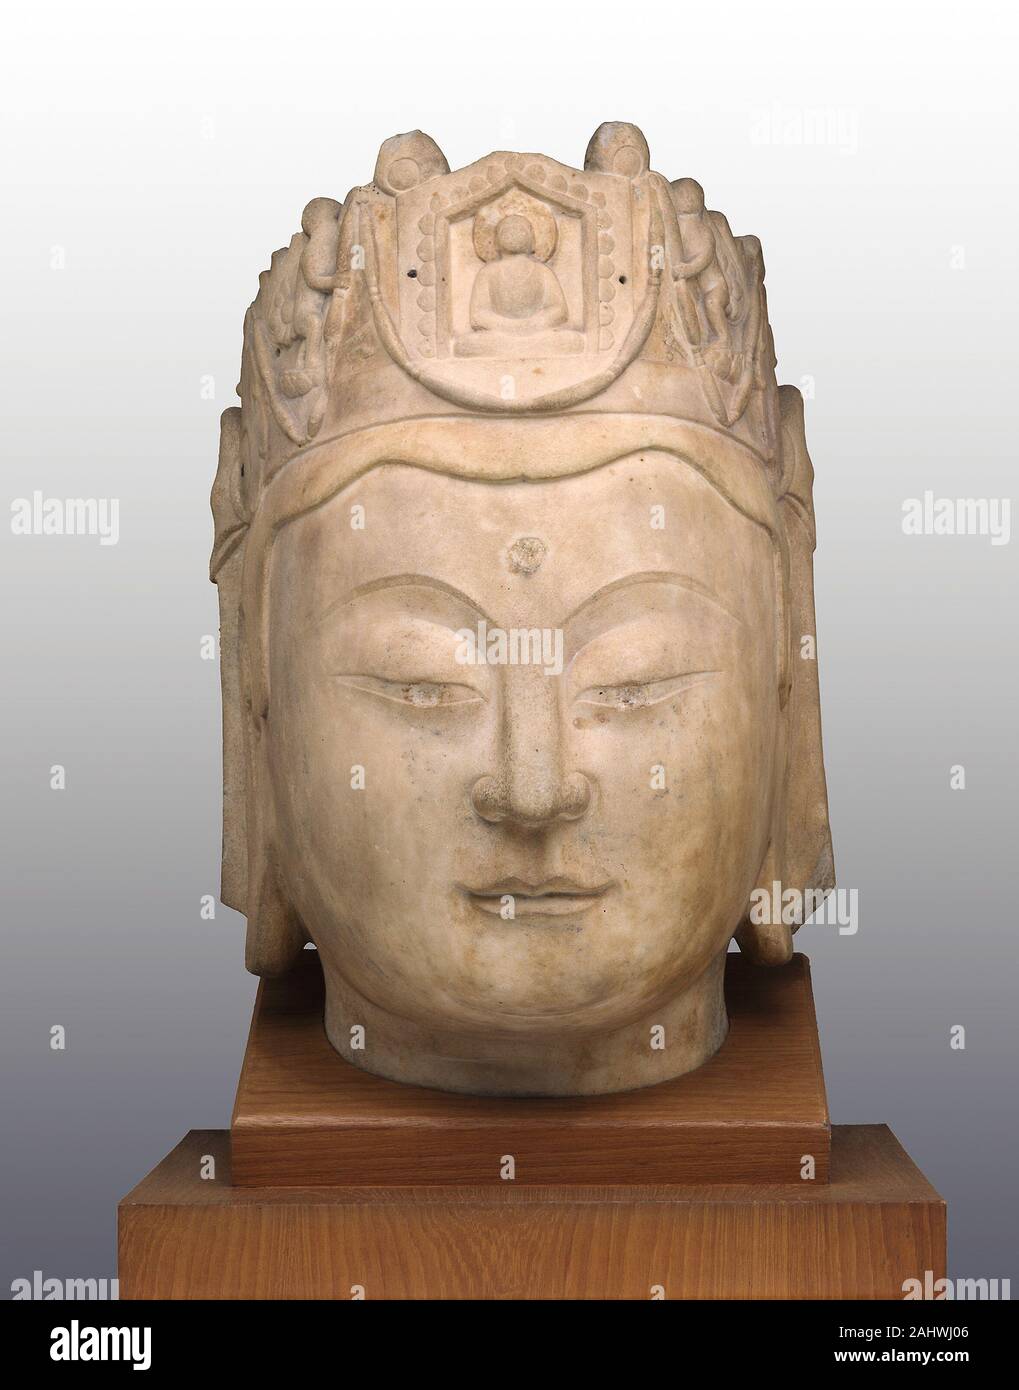 Leiter der Guanyin. 575 AD - 600 AD. China. Marmor mit Spuren von Beschlägen an der Krone Die gutartige, altruistisch Aspekt des Buddhismus in diesem wunderschön geschnitzten Marmor Leiter der Bodhisattva Guanyin (Sanskrit Avalokitesvara) ausgedrückt wird. Die Miniatur Bild des Buddha bekannt als Amitabha (Amituo), in der Krone dargestellt, zeigt die Identität des Bodhisattva. Bestimmte Funktionen dieser Kopf werden gemeinsam mit anderen buddhistischen Symbole der Dreschkorb stirn Kreis (URNA) ist ein vielversprechendes Zeichen, aus der Weisheit ausstrahlt; die langgezogene Ohrläppchen deuten auf die aristokratische Indischen brauch er tragen Stockfoto